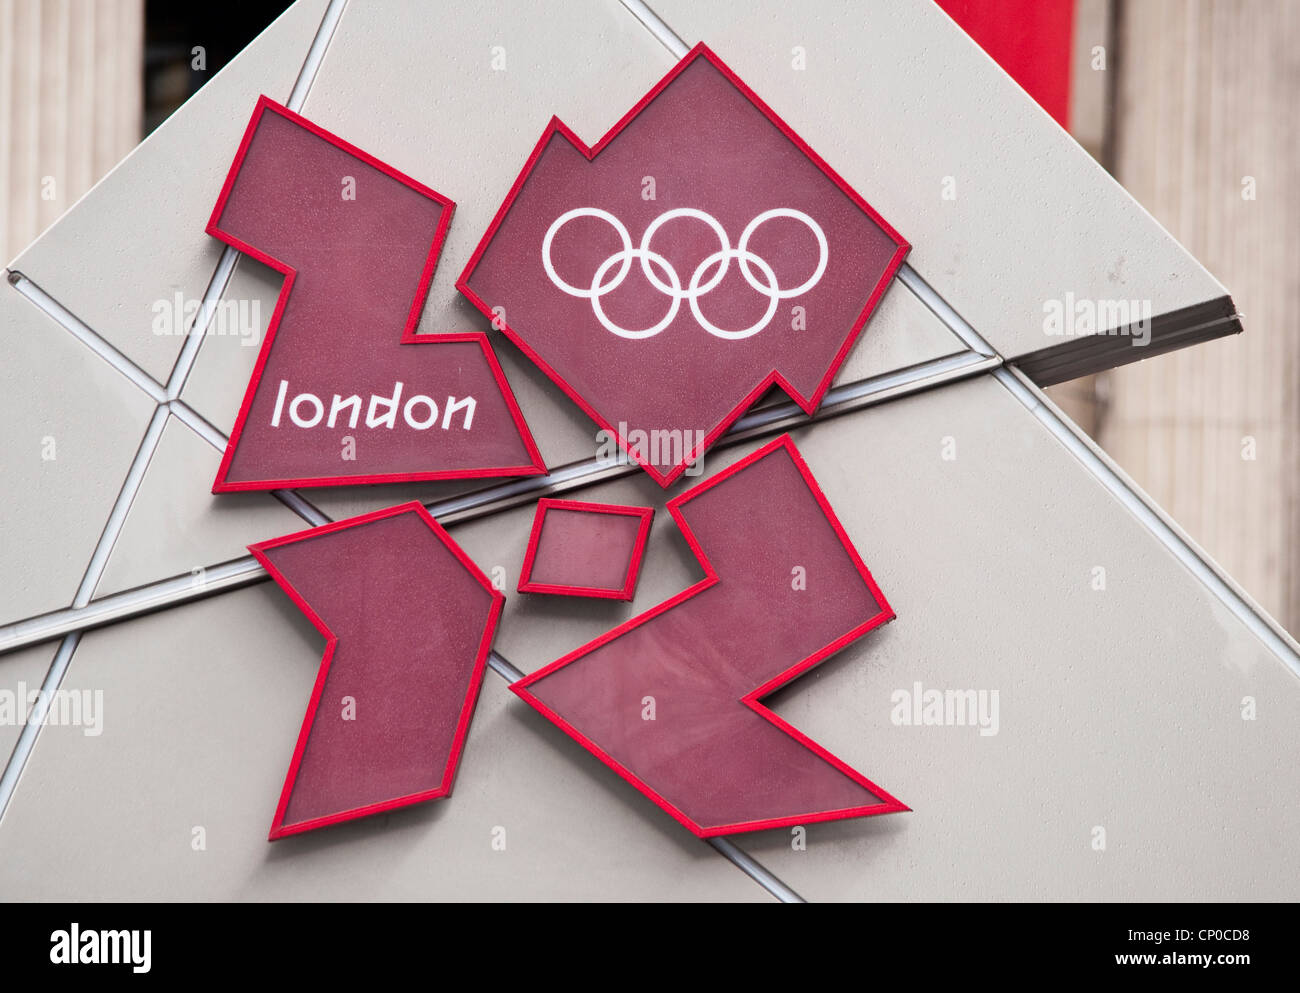 Juegos Olímpicos de Londres 2012 en Trafalgar Square en Londres, Inglaterra, Reino Unido. Foto de stock